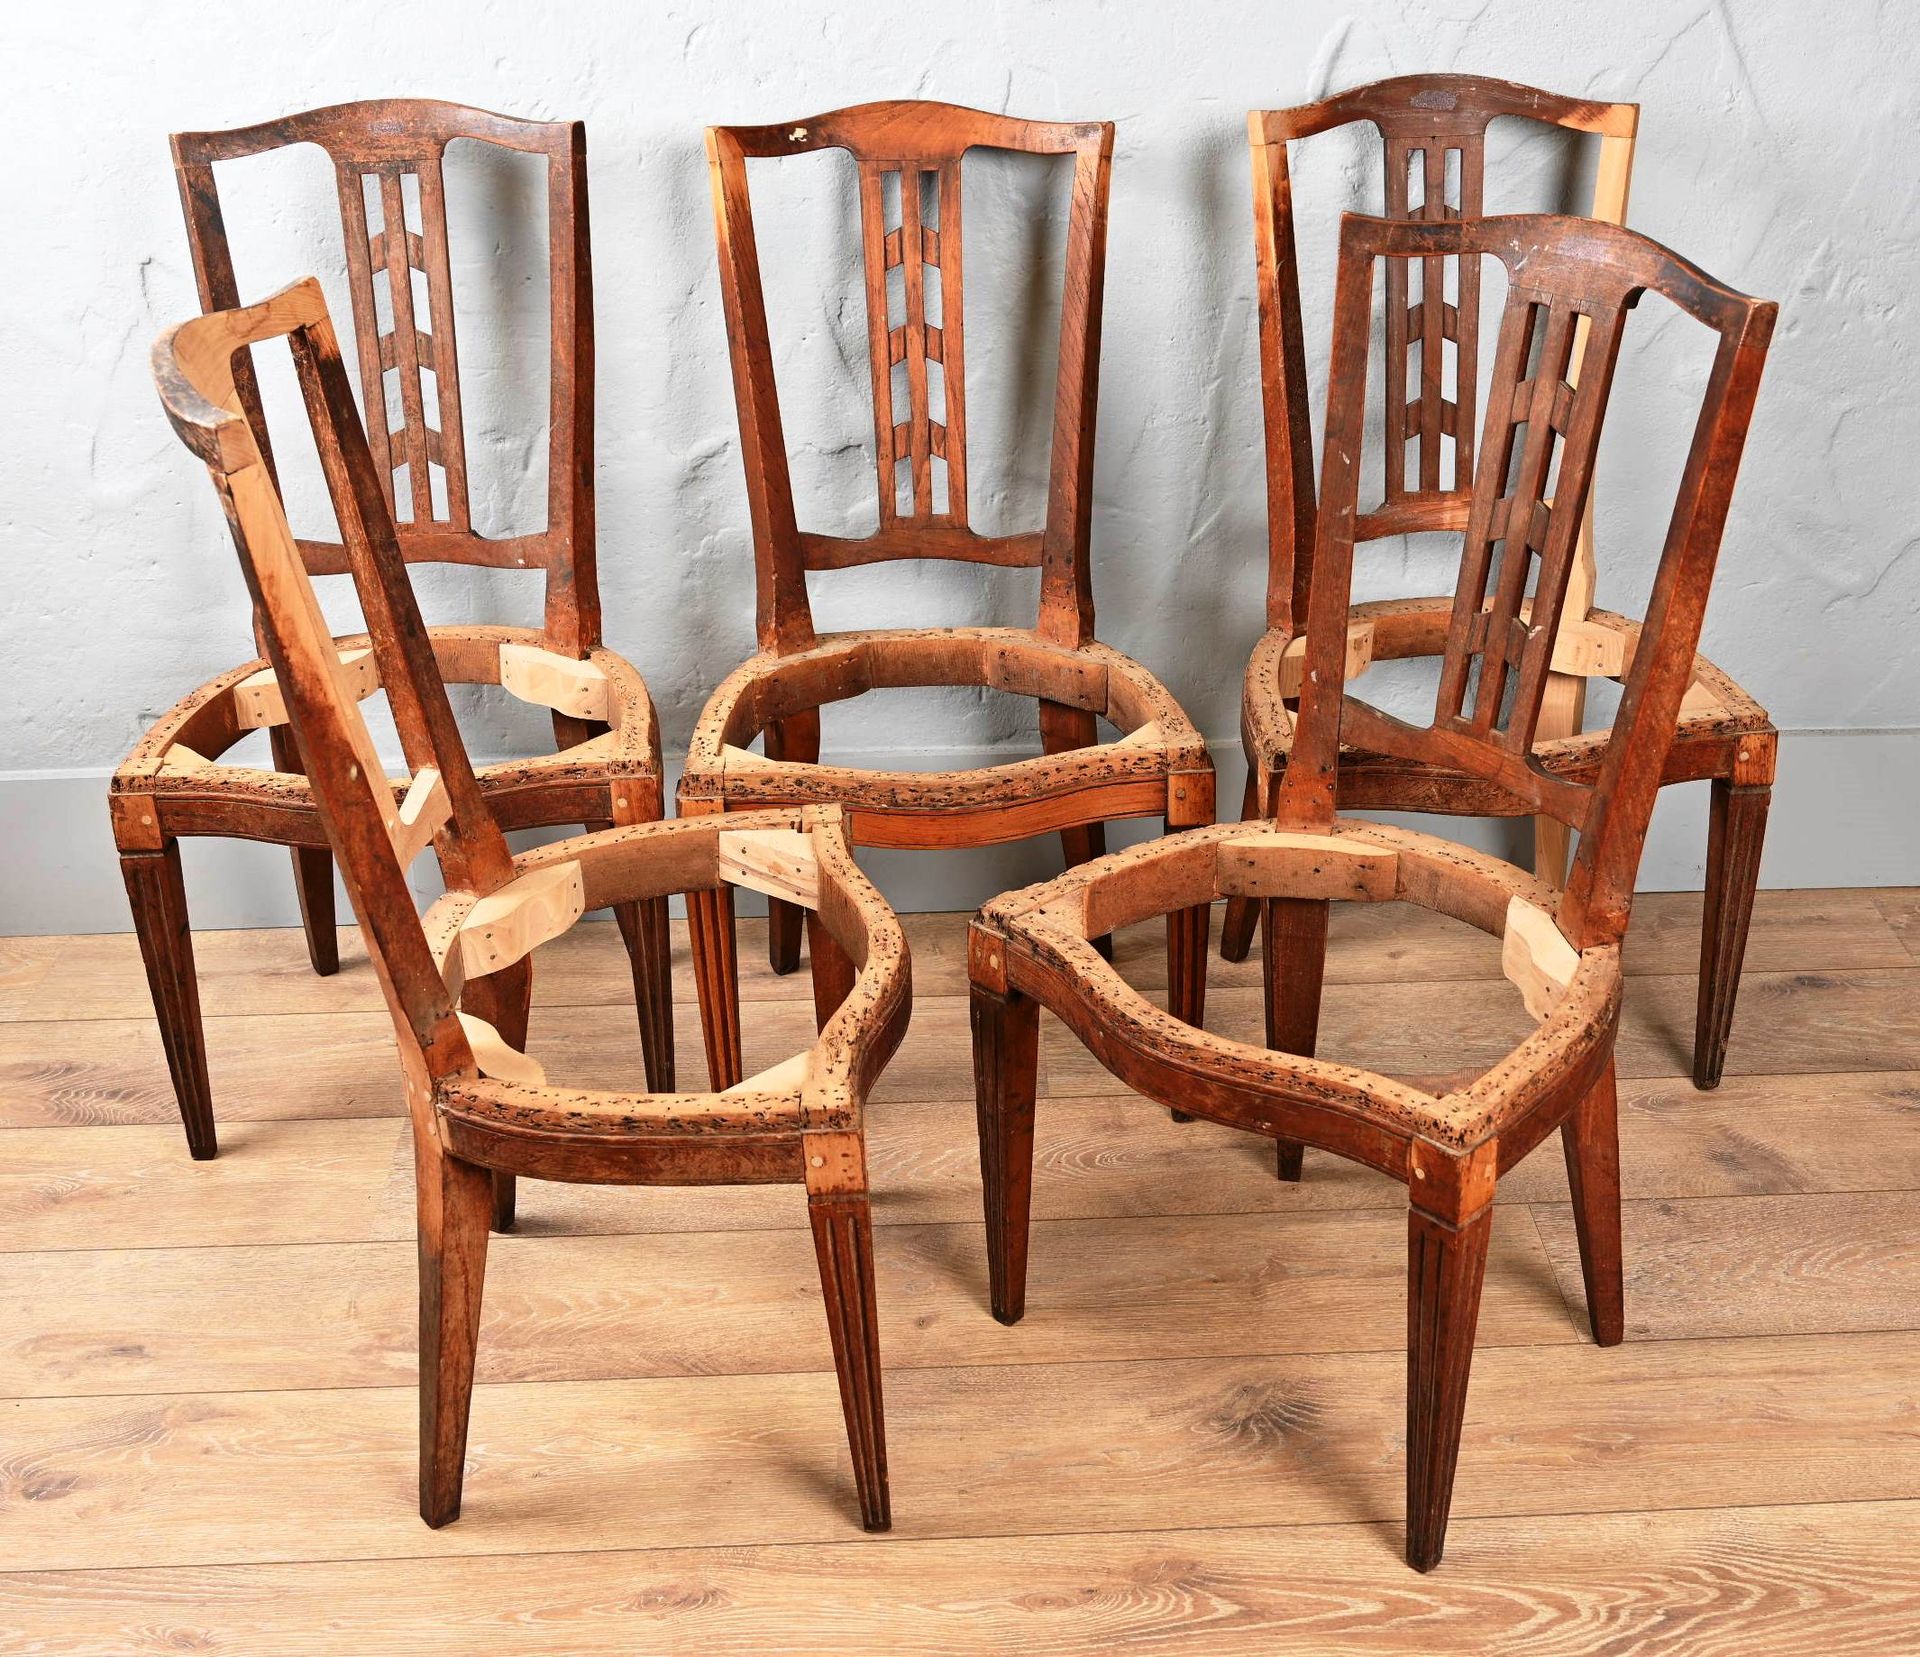 Suite de 5 chaises de style Louis XVI. Suite of 5 chairs in the Louis XVI style.&hellip;